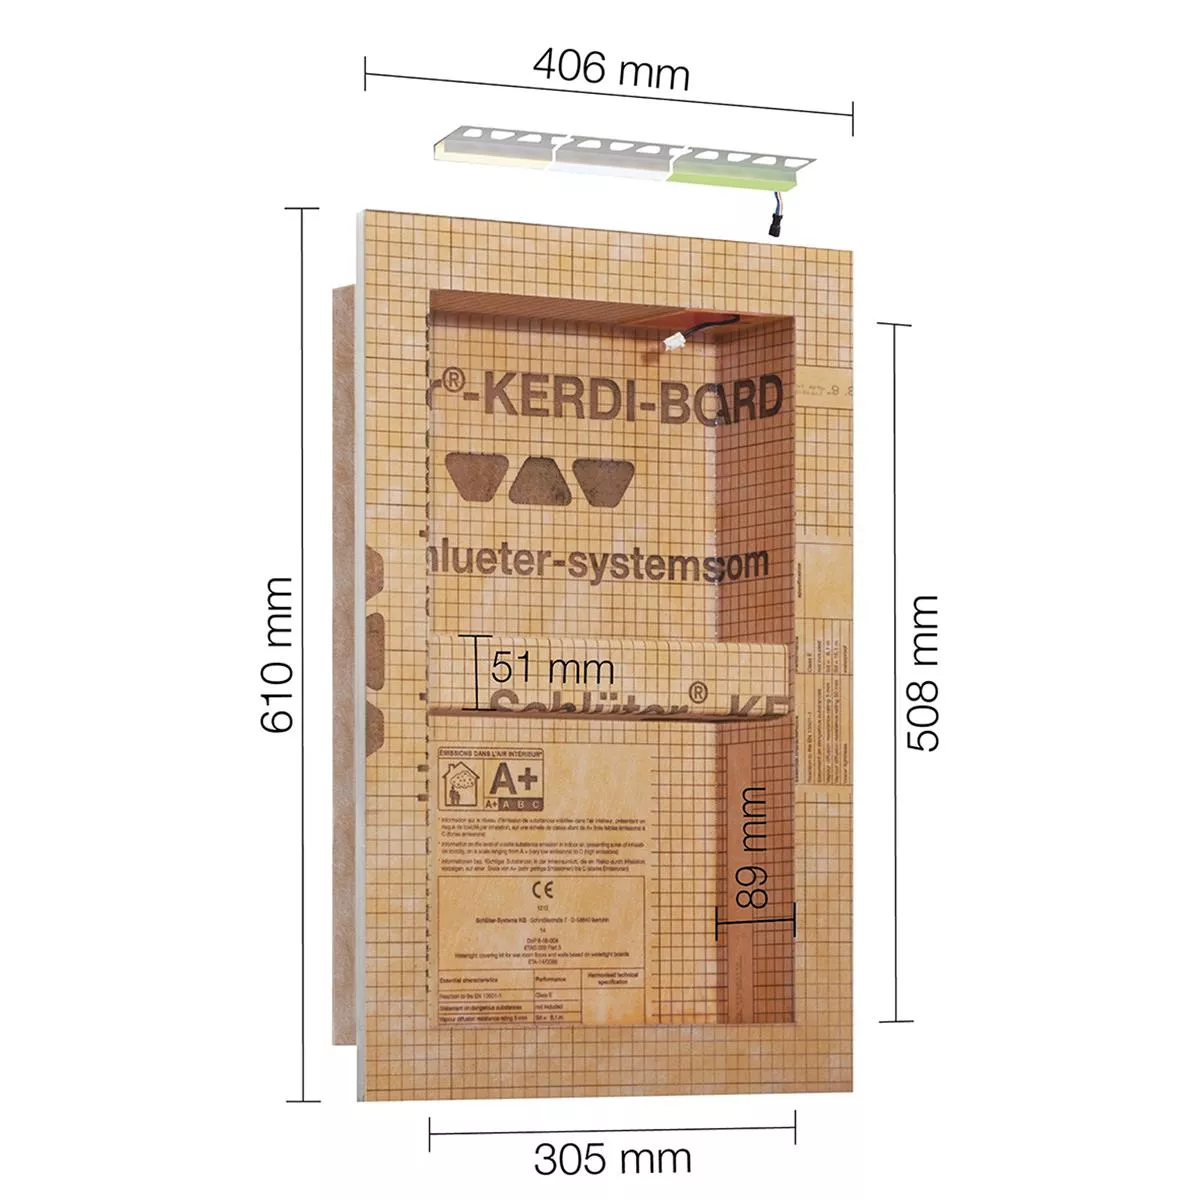 Schlüter Kerdi Board NLT výklenek set LED osvětlení RGB 30,5x50,8x0,89 cm